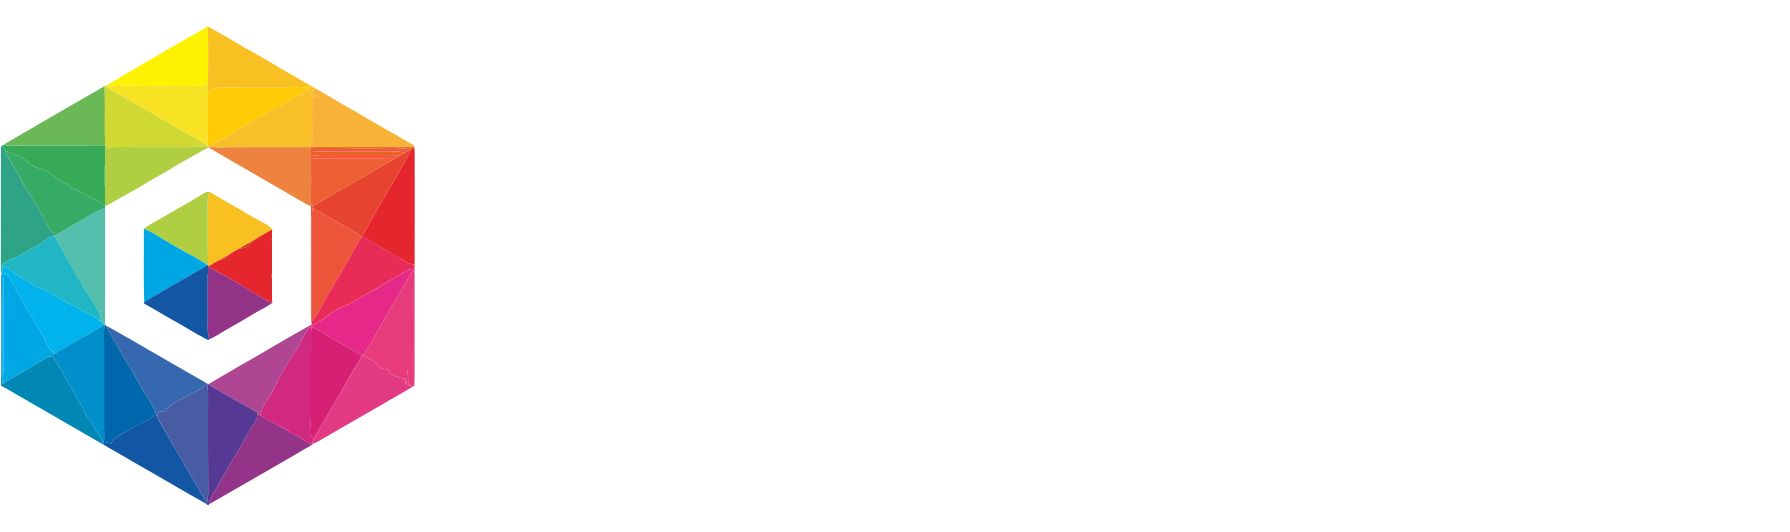 Recursion Pharmaceuticals logo large for dark backgrounds (transparent PNG)